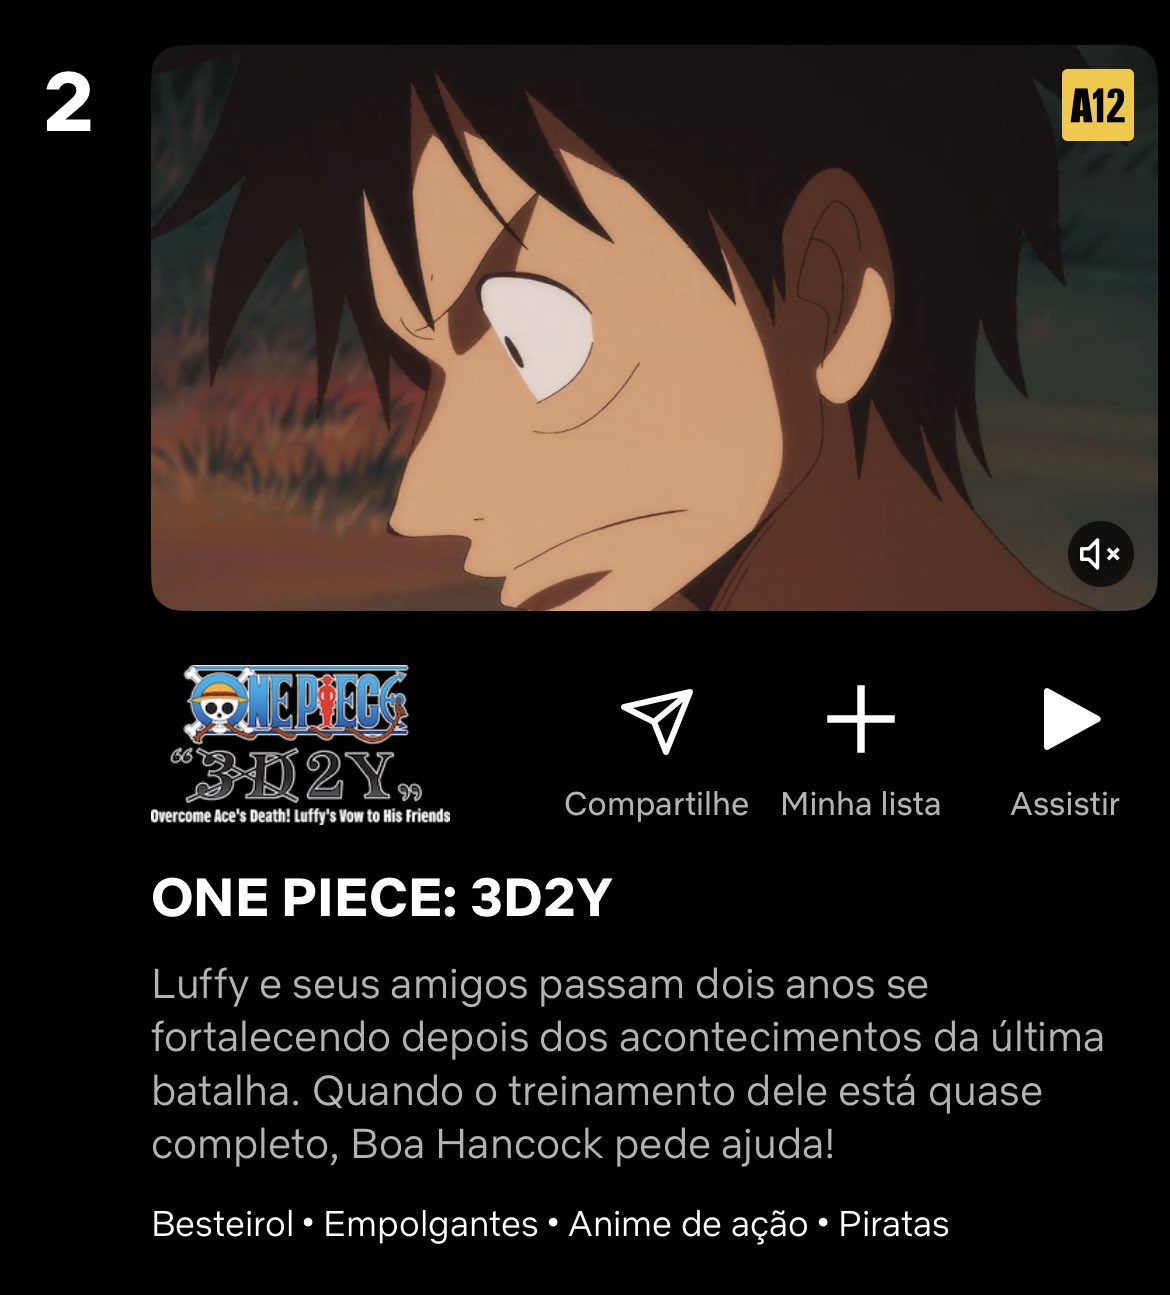 One Piece Brasil - One Piece no TOP 10 da Netflix! O anime está em